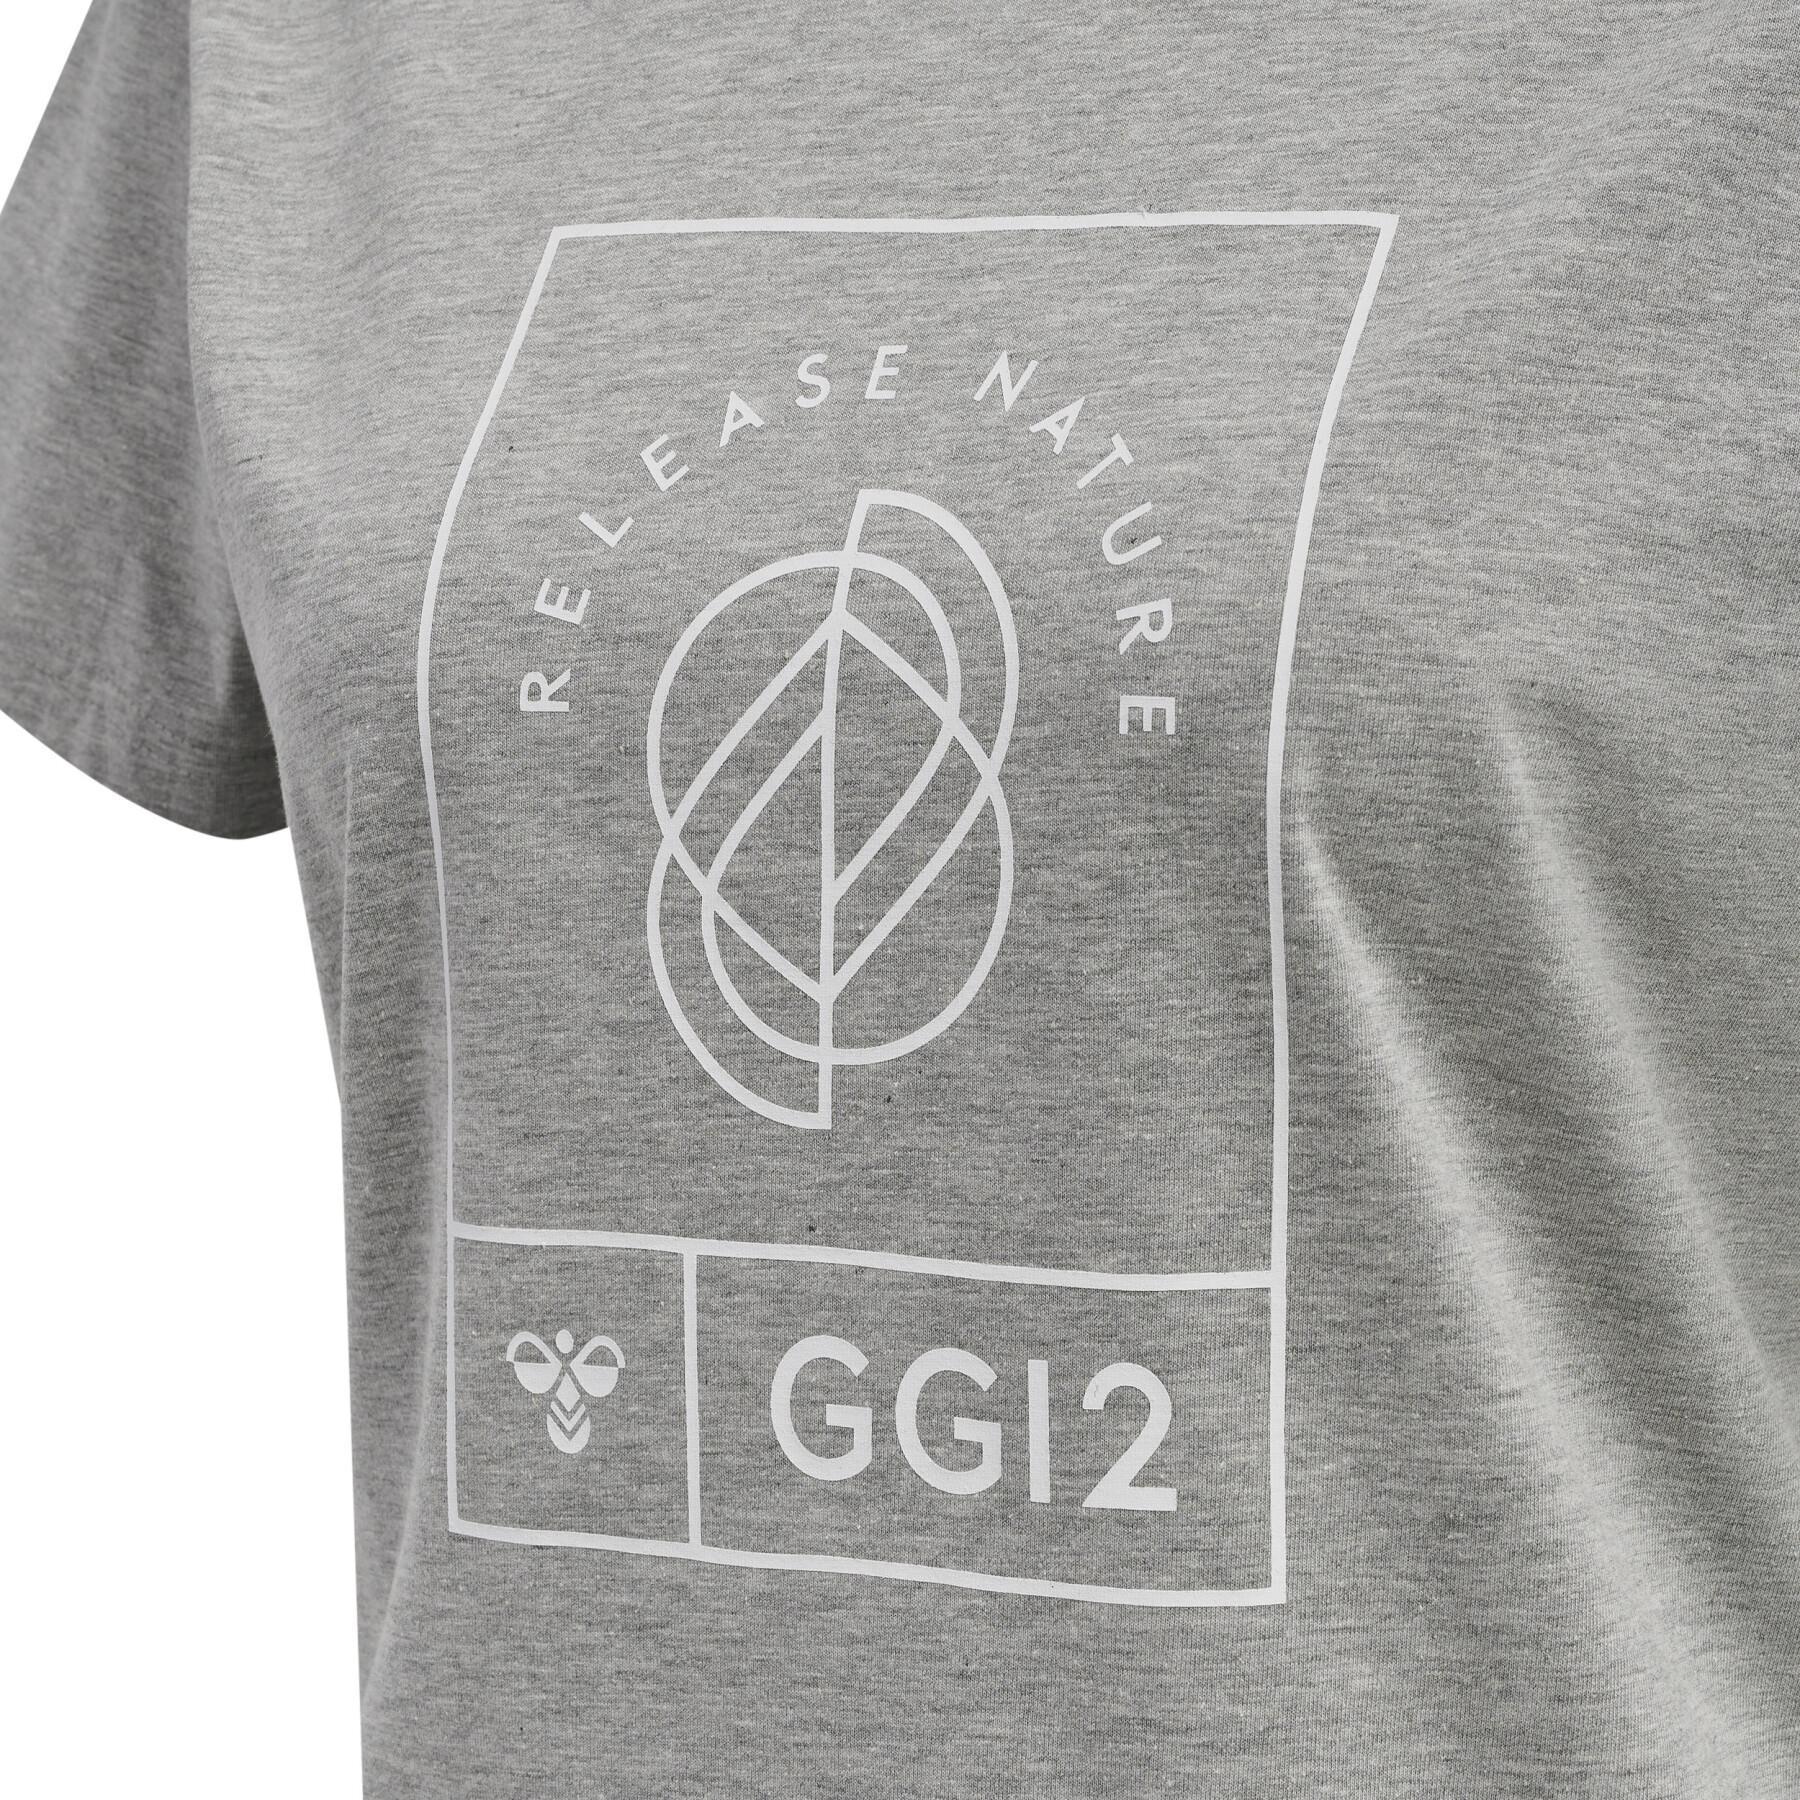 T-Shirt Damen Hummel GG12